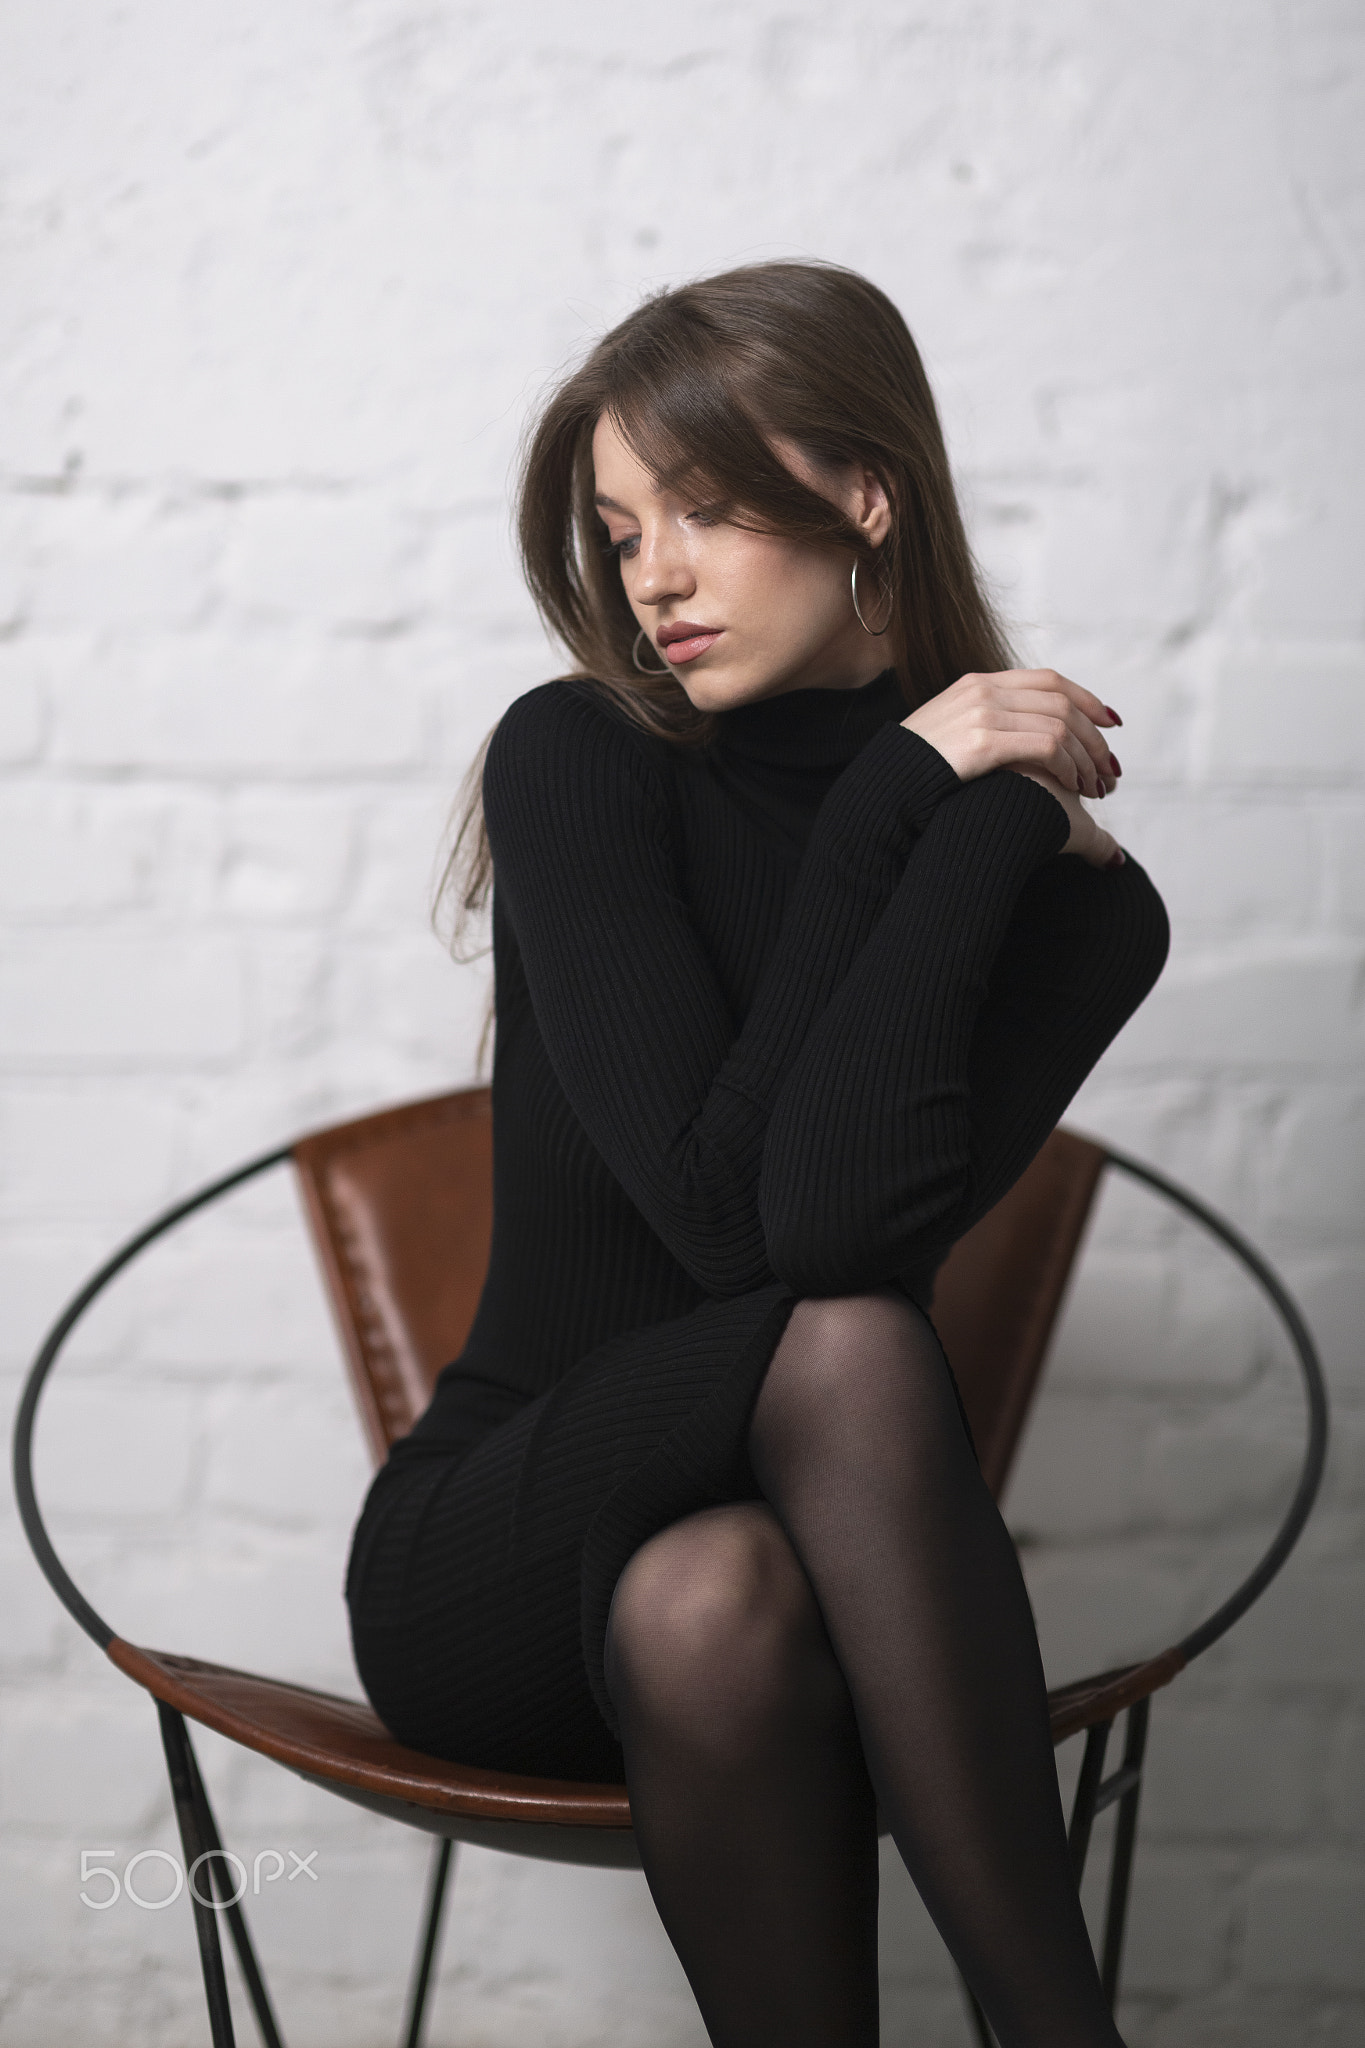 Murat Kuzhakhmetov Women Brunette Black Clothing Legs Crossed Hoop Earrings Chair Wall 1365x2048